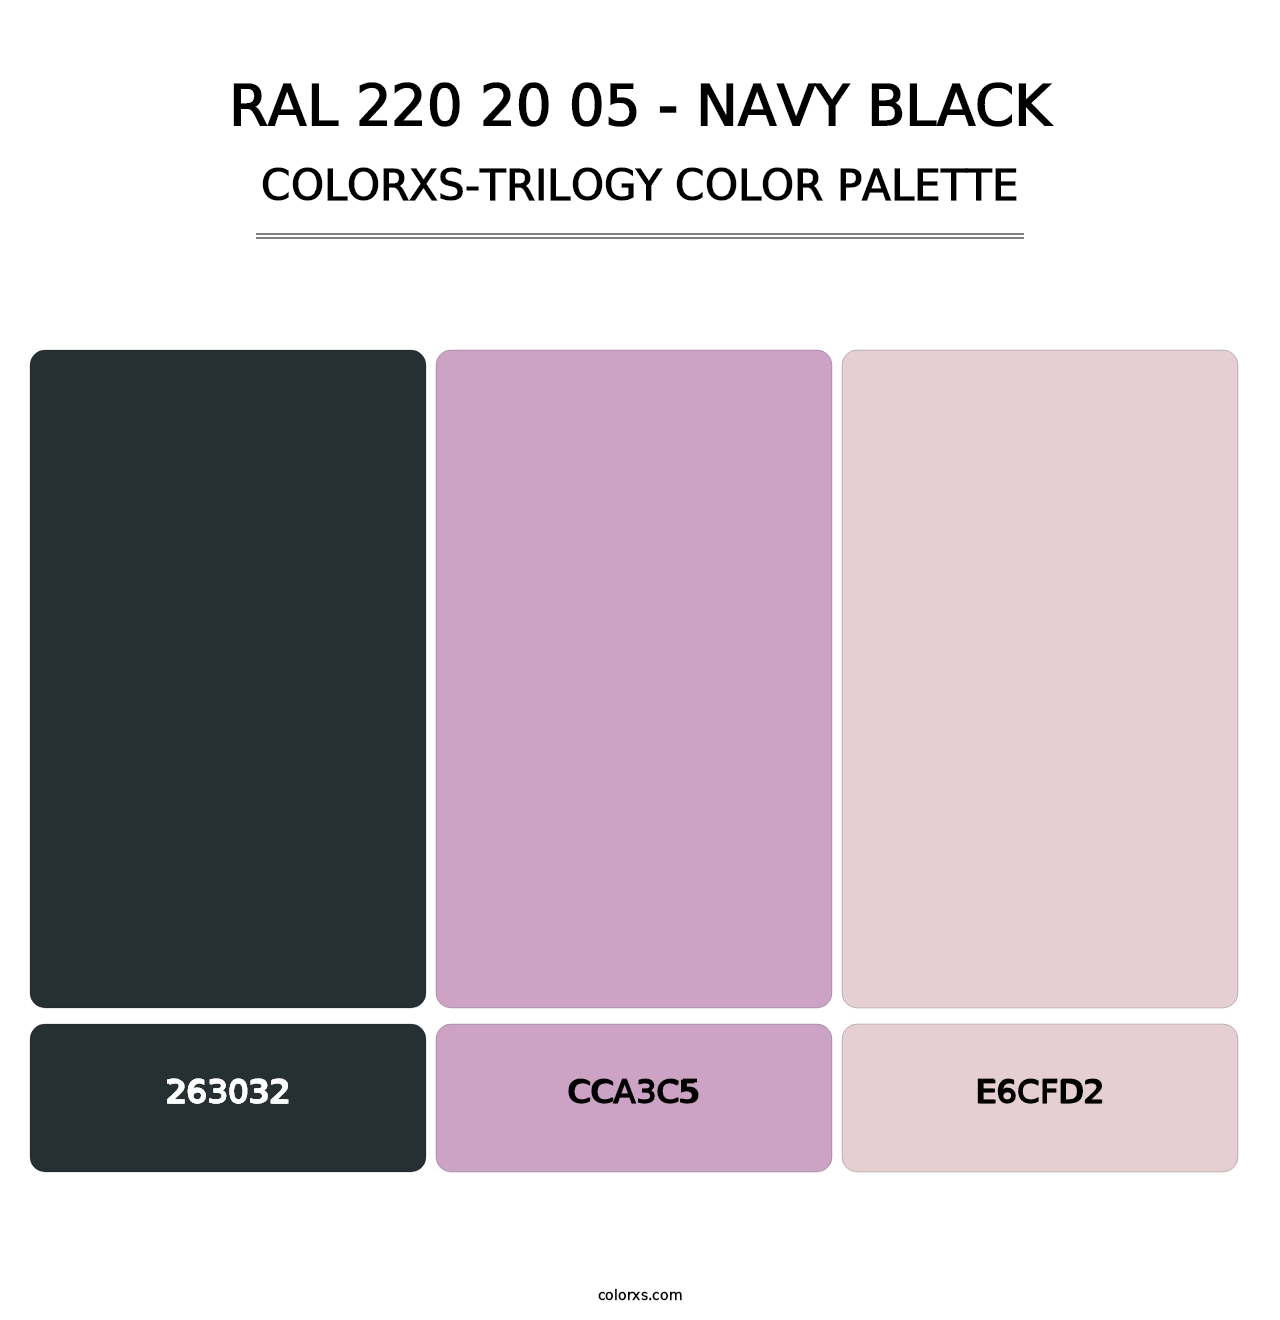 RAL 220 20 05 - Navy Black - Colorxs Trilogy Palette